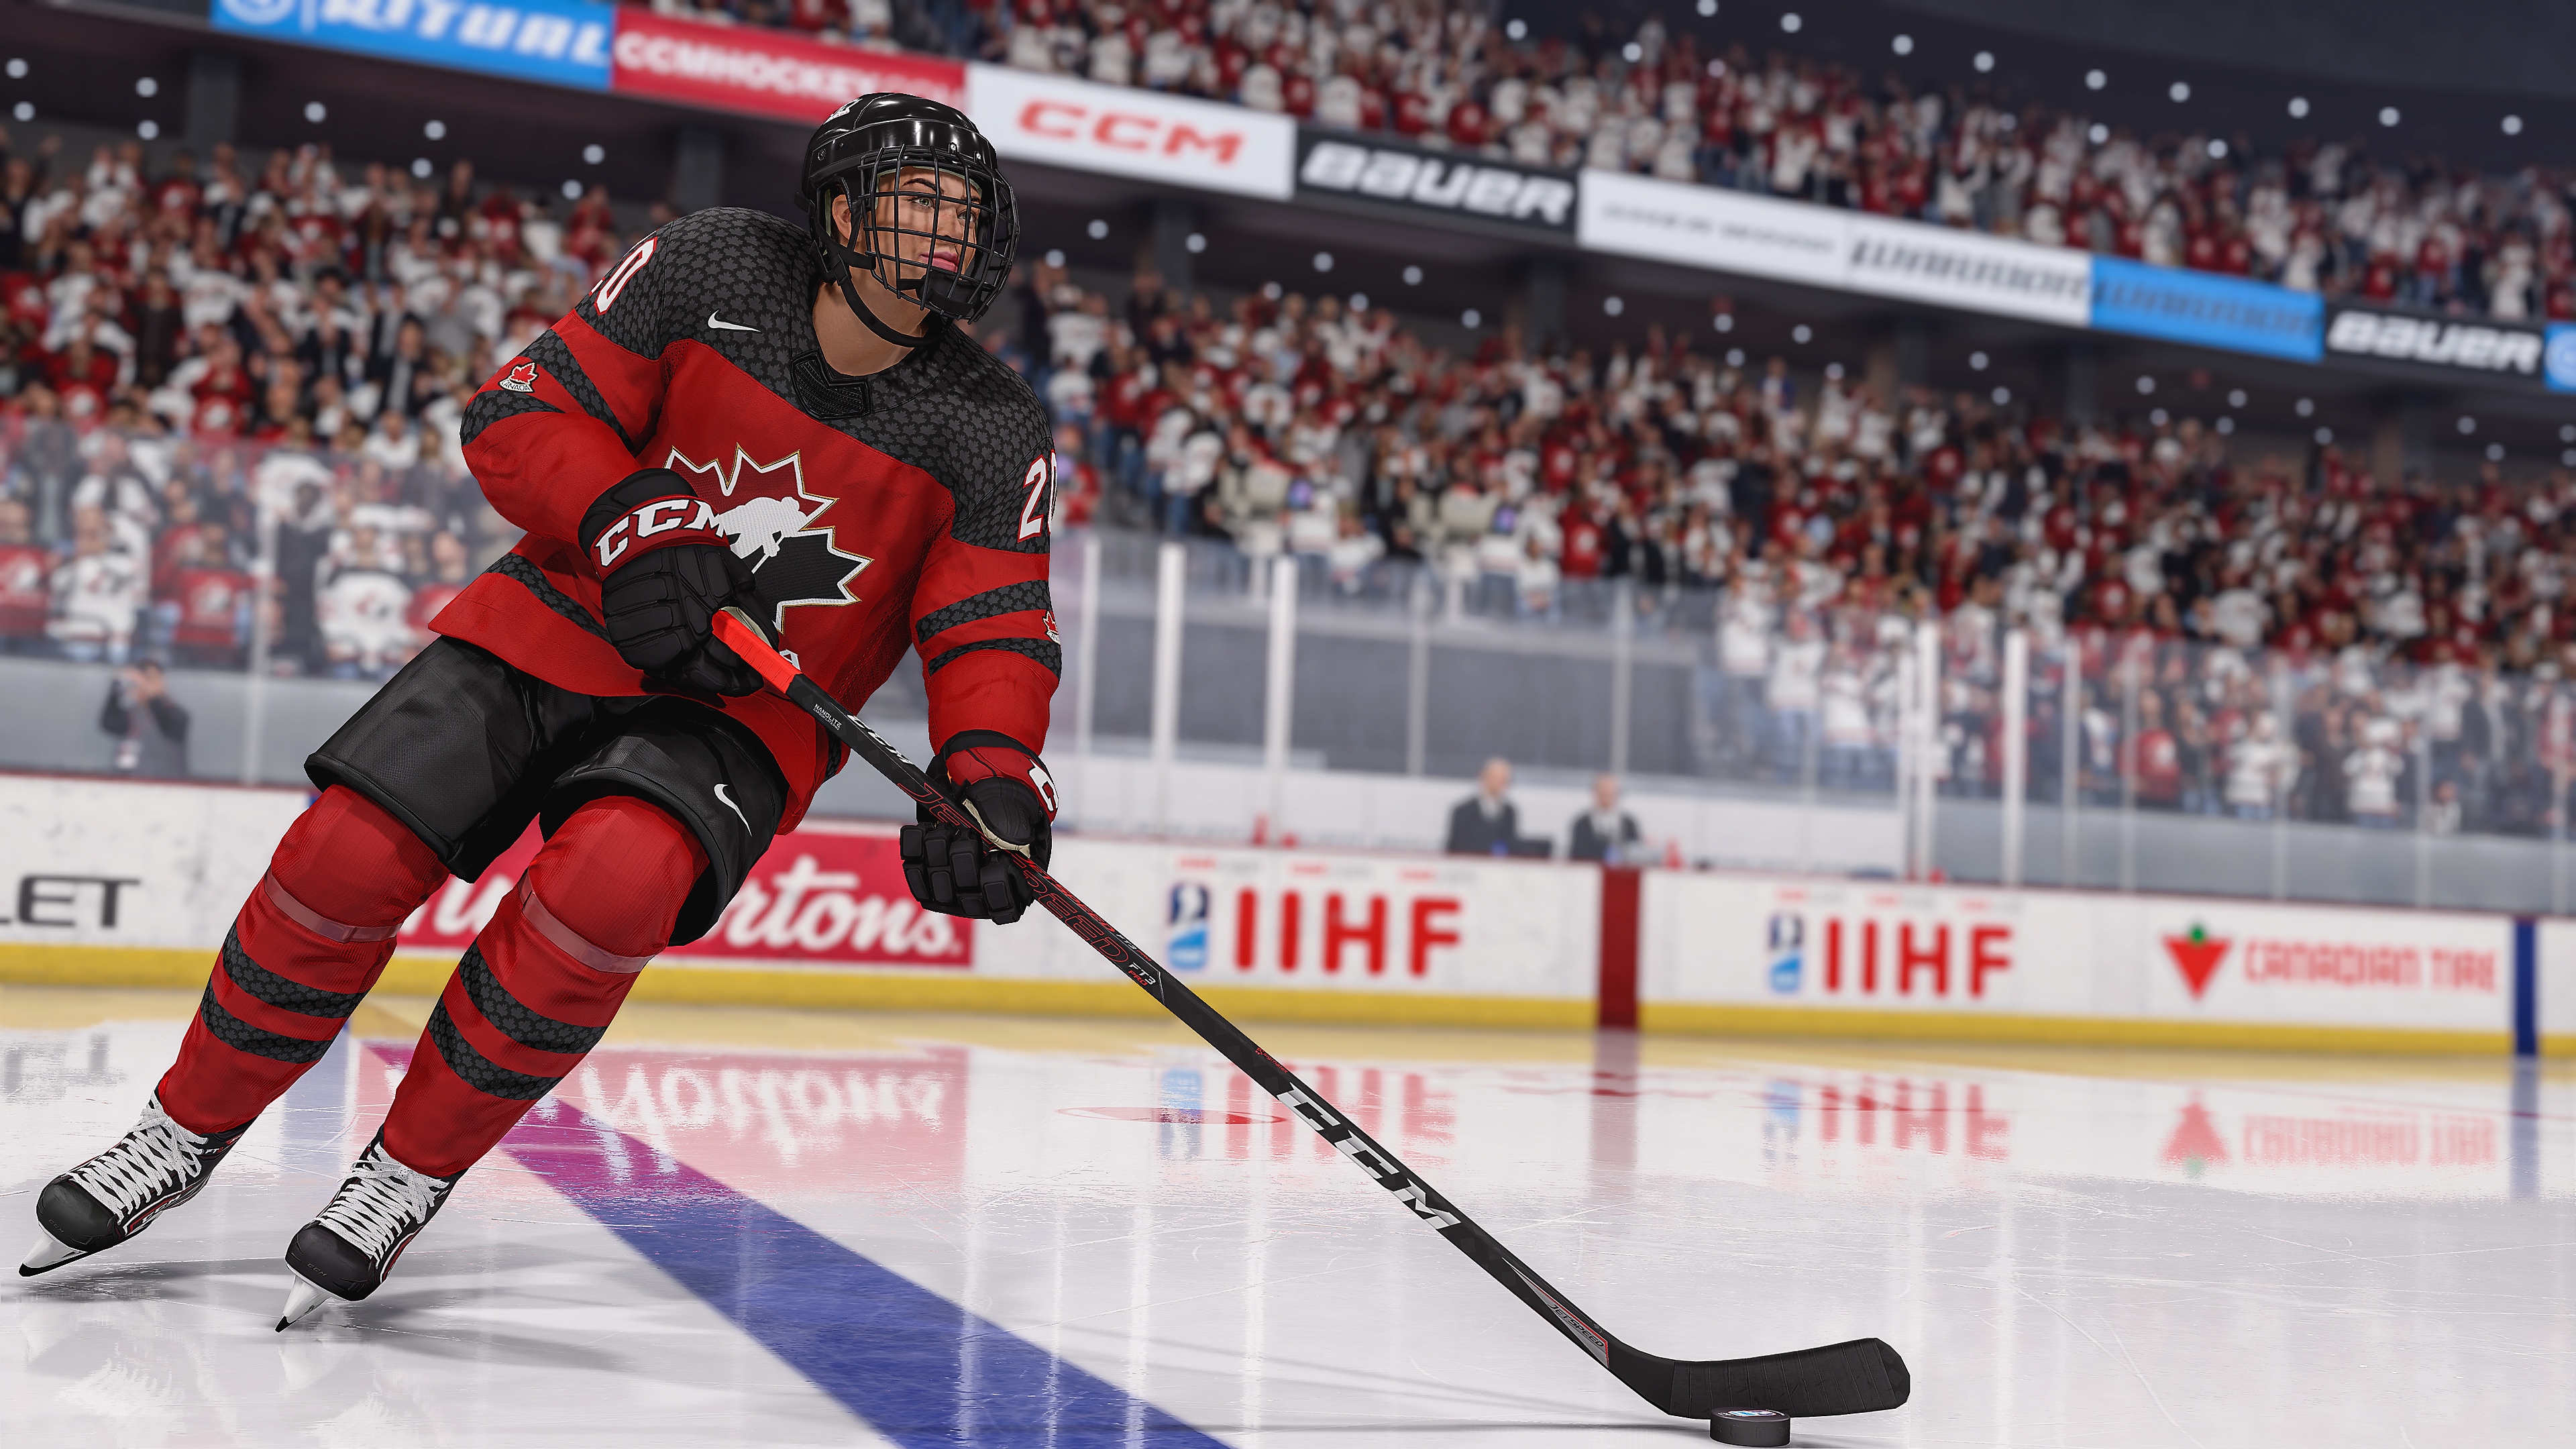 Capture d'écran de EA Sports NHL 23 où un joueur de hockey patine avec la rondelle.